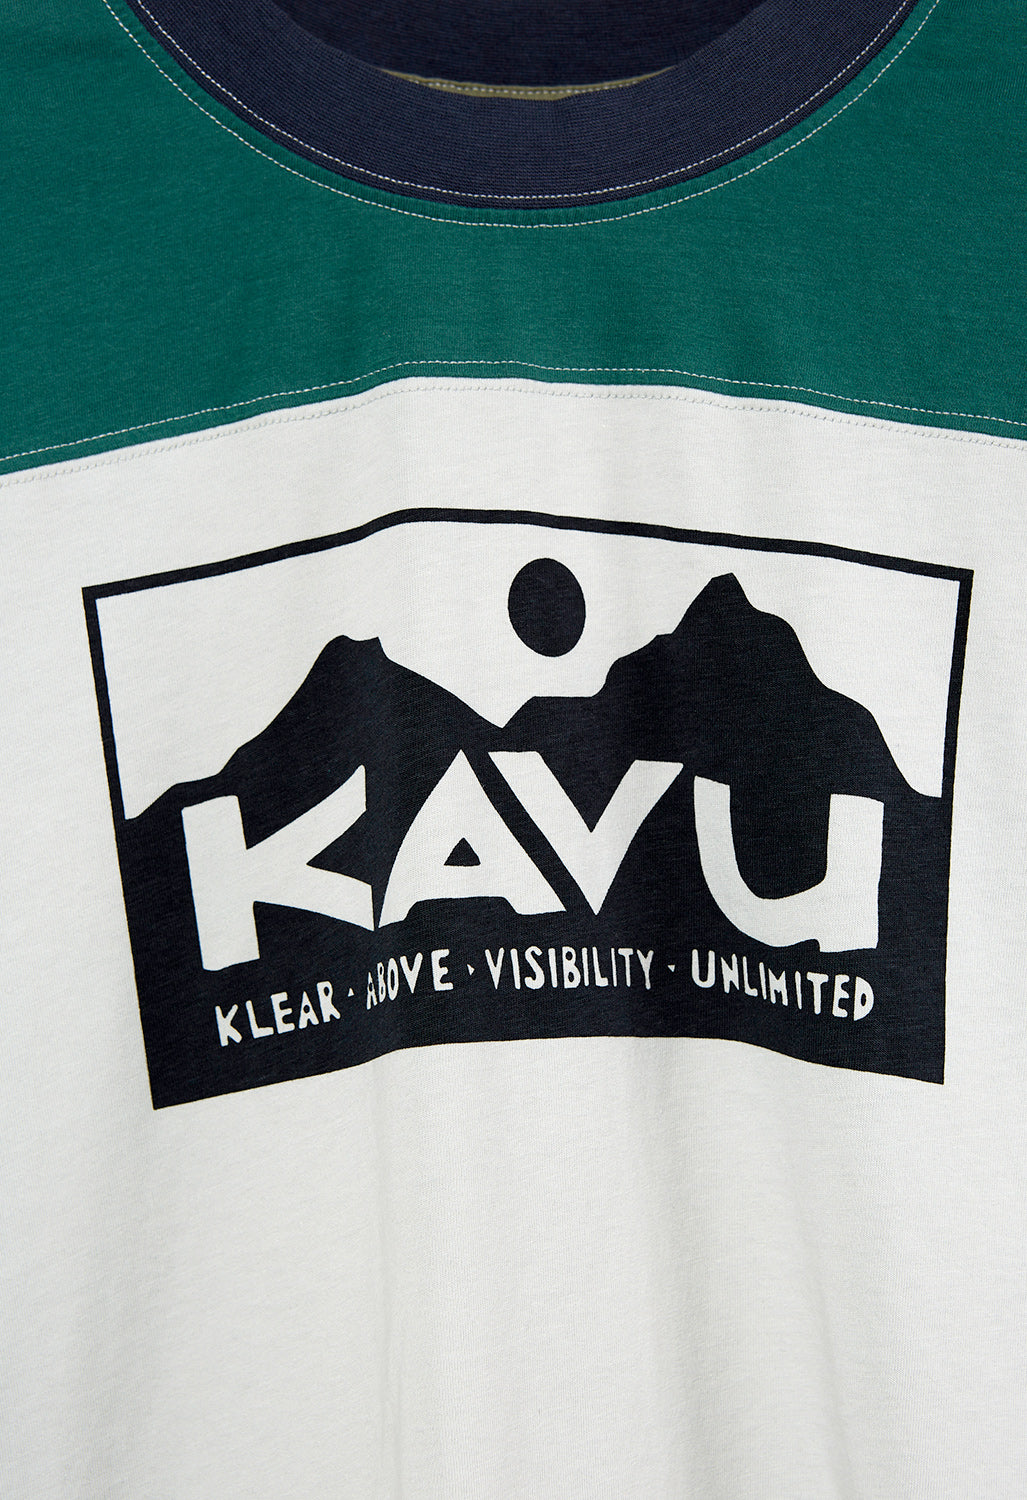 KAVU Malin Women's T-Shirt - Forest